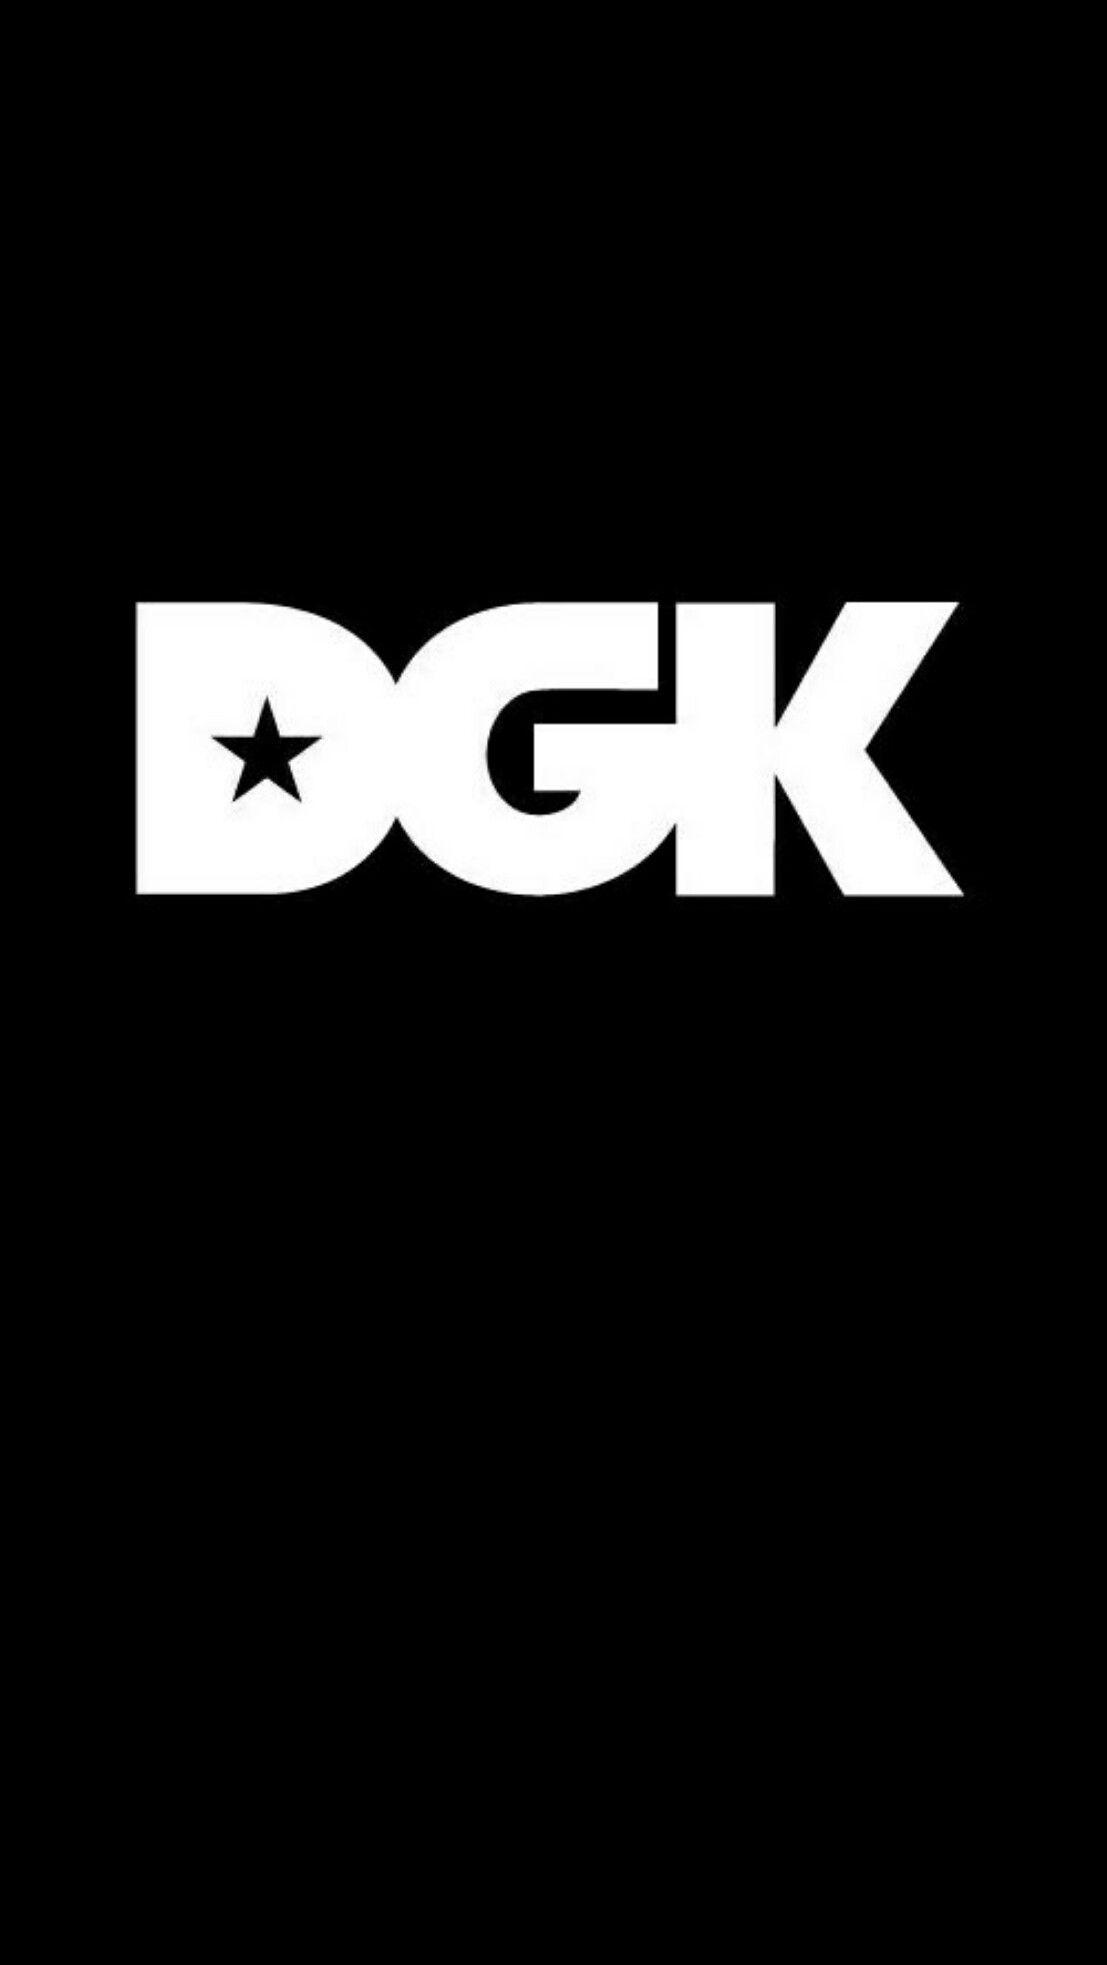 Dgk HD wallpapers  Pxfuel